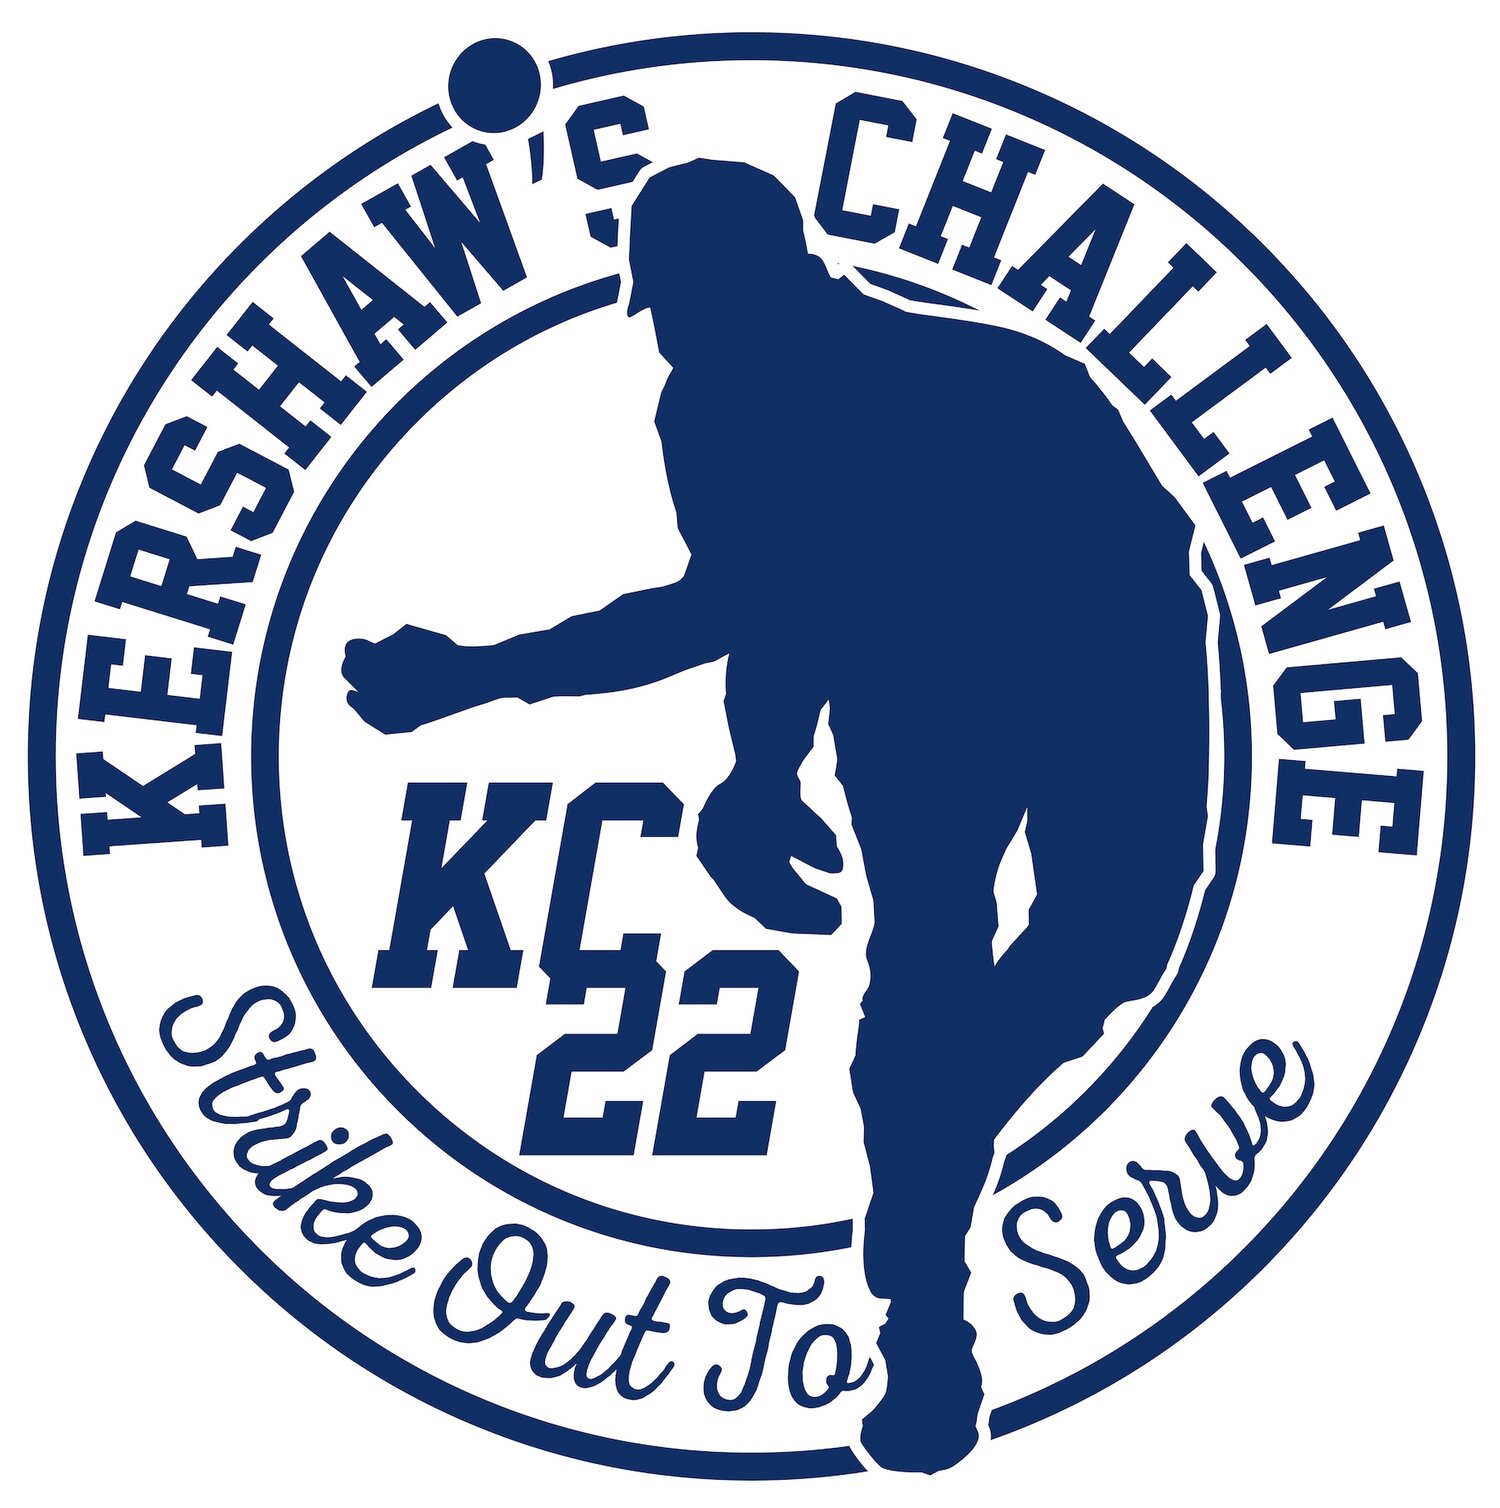 Kershaw's Challenge